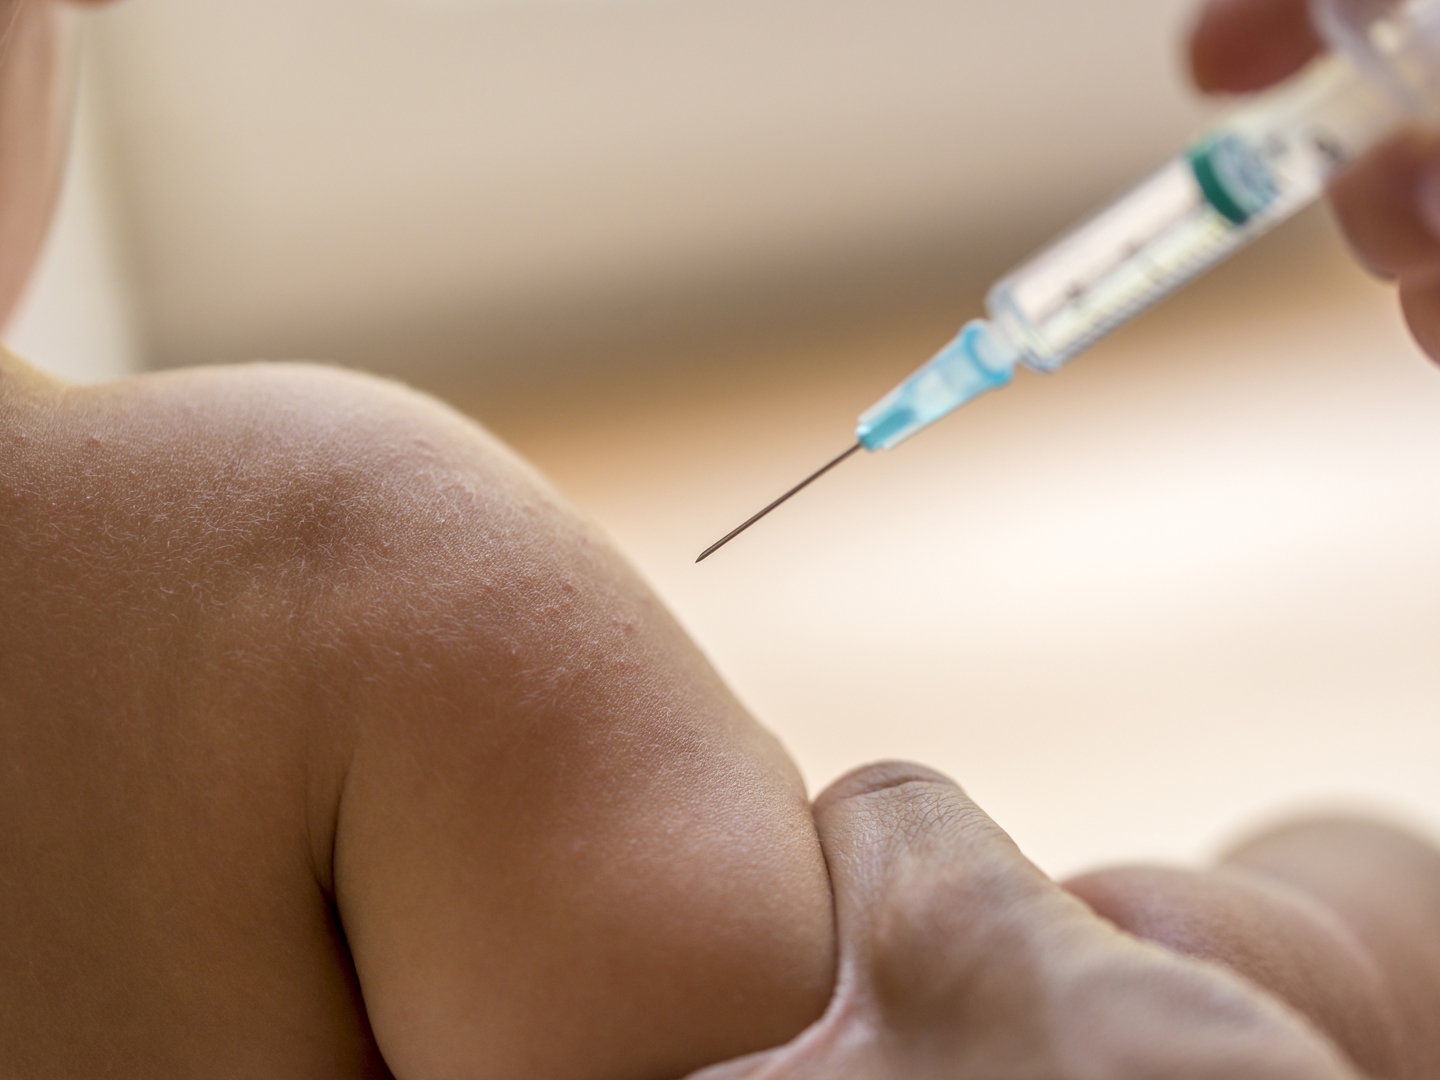 医生用一次性小型皮下注射器给小孩注射疫苗或抗生素，近距离观察孩子的手臂和针头。